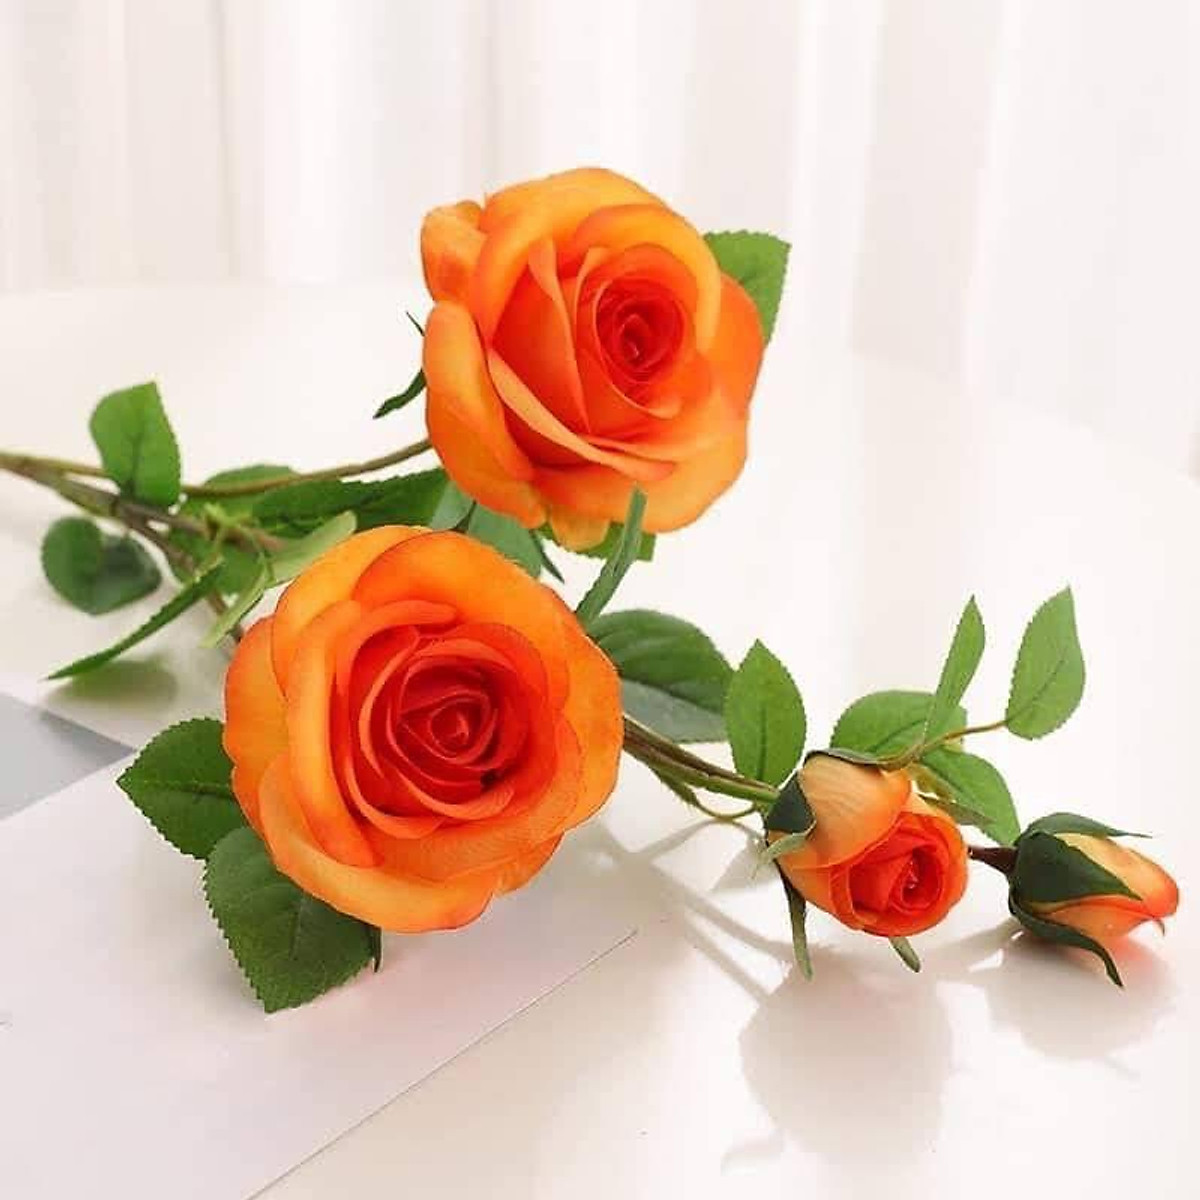 Hoa lụa cao cấp, cành 4 bông hoa hồng Pháp decor phòng khách ...